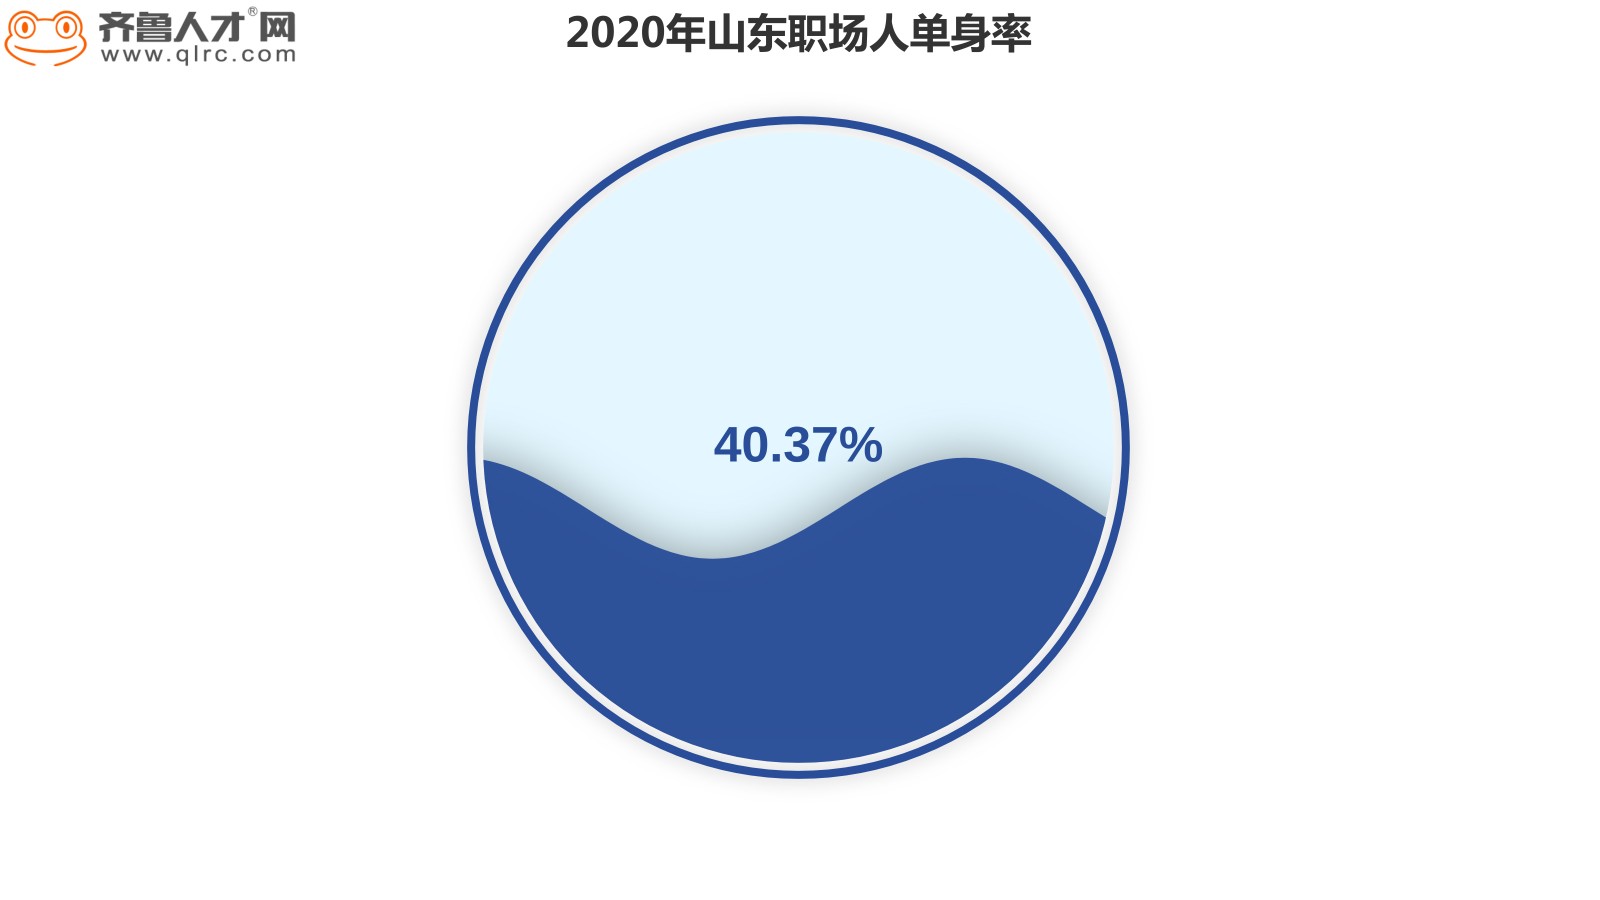 齐鲁人才网-2020年情人节看山东职场人怎么过？图1.jpg